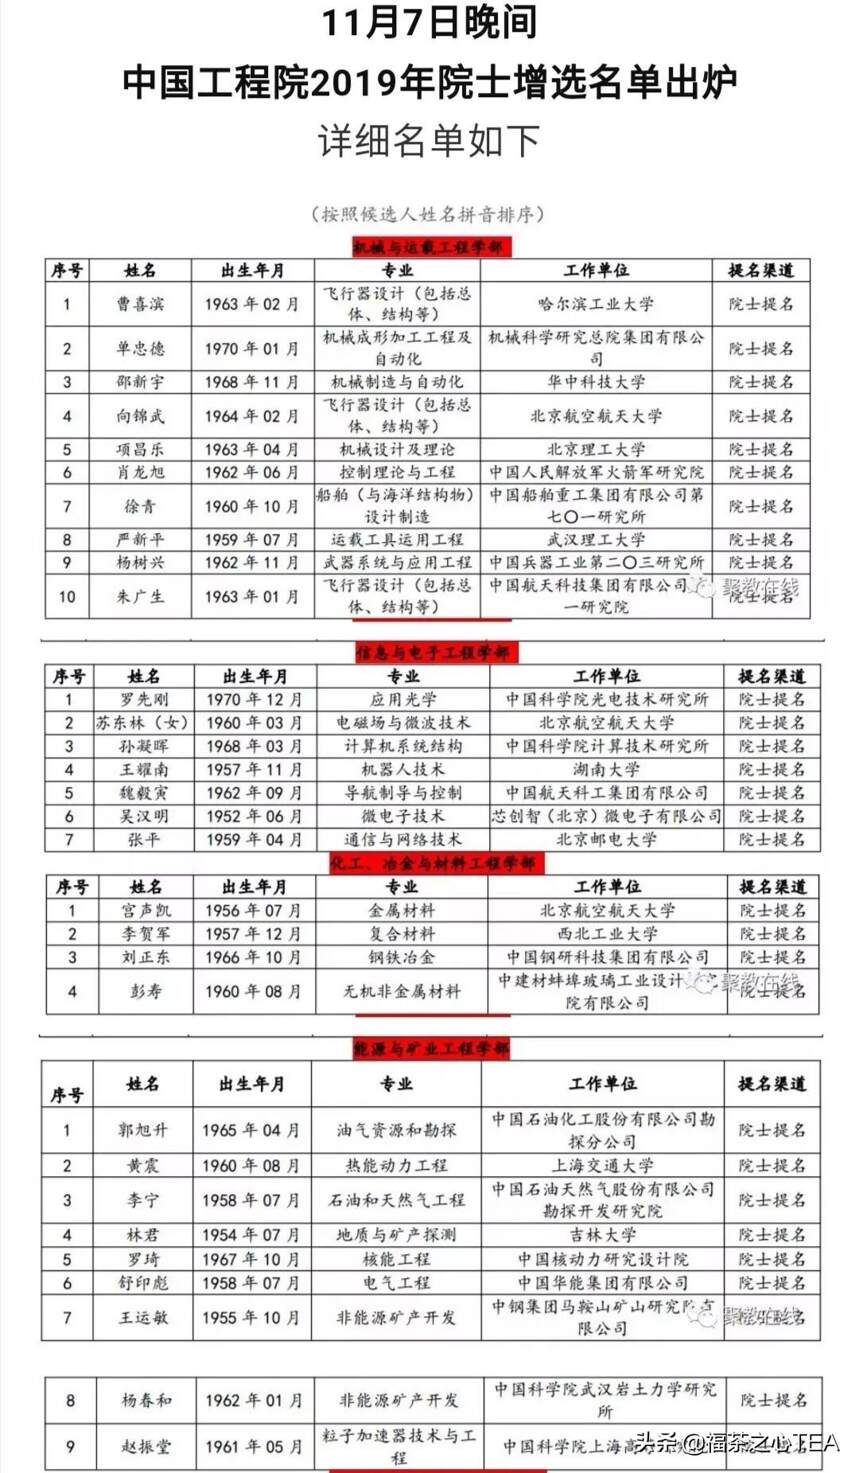 中国工程院2019年院士增选名单公布！刘仲华当选院士